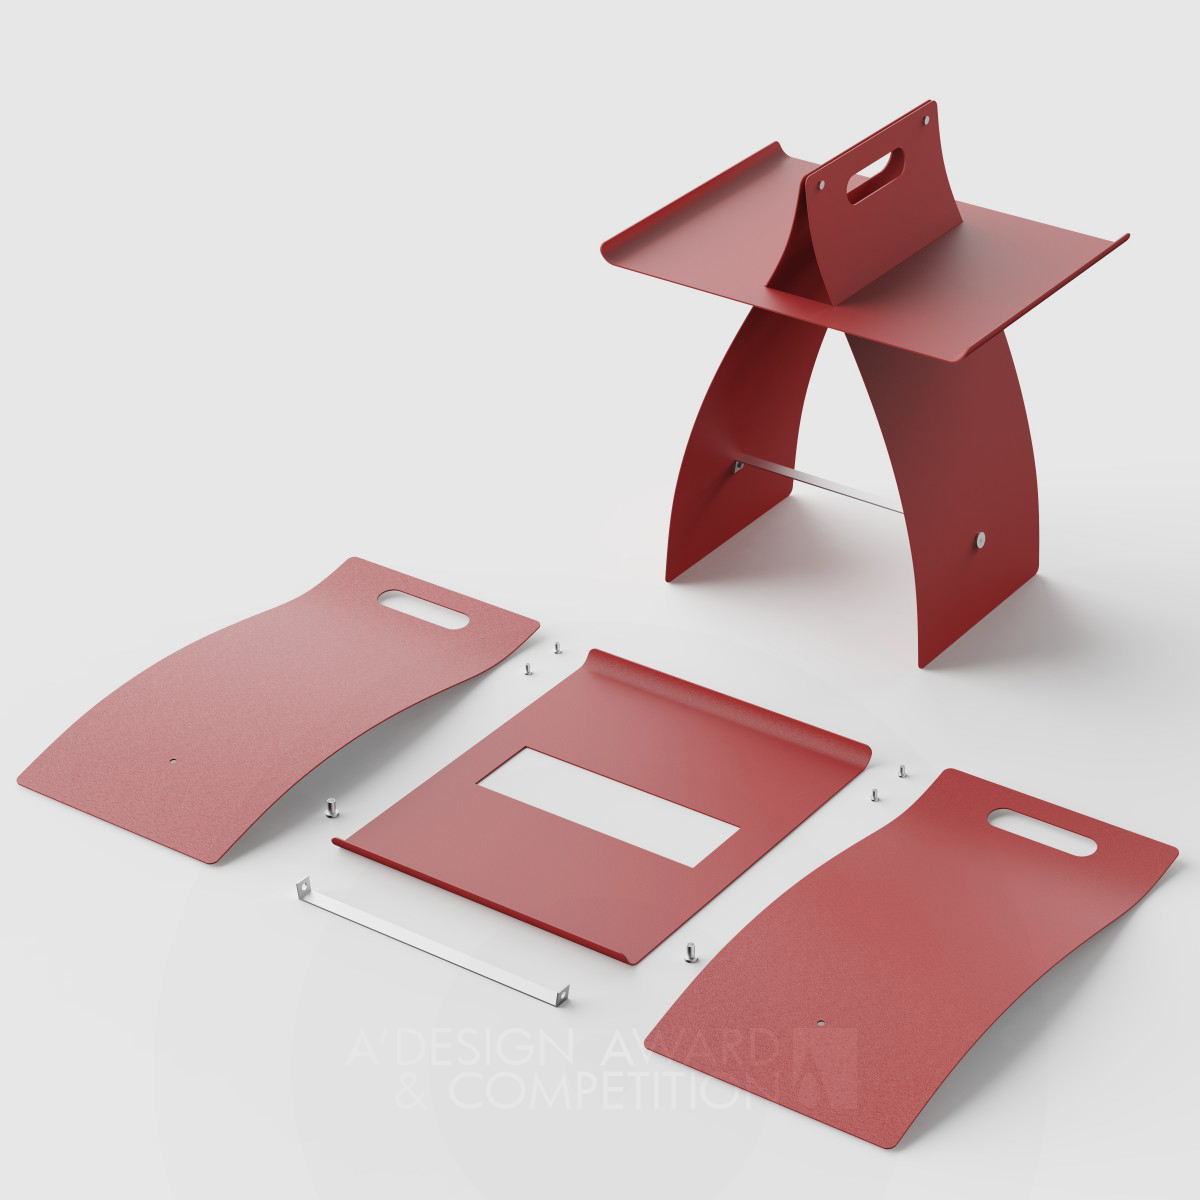 Сторонний стол "Tai": Уникальный дизайн от Sunriu Design